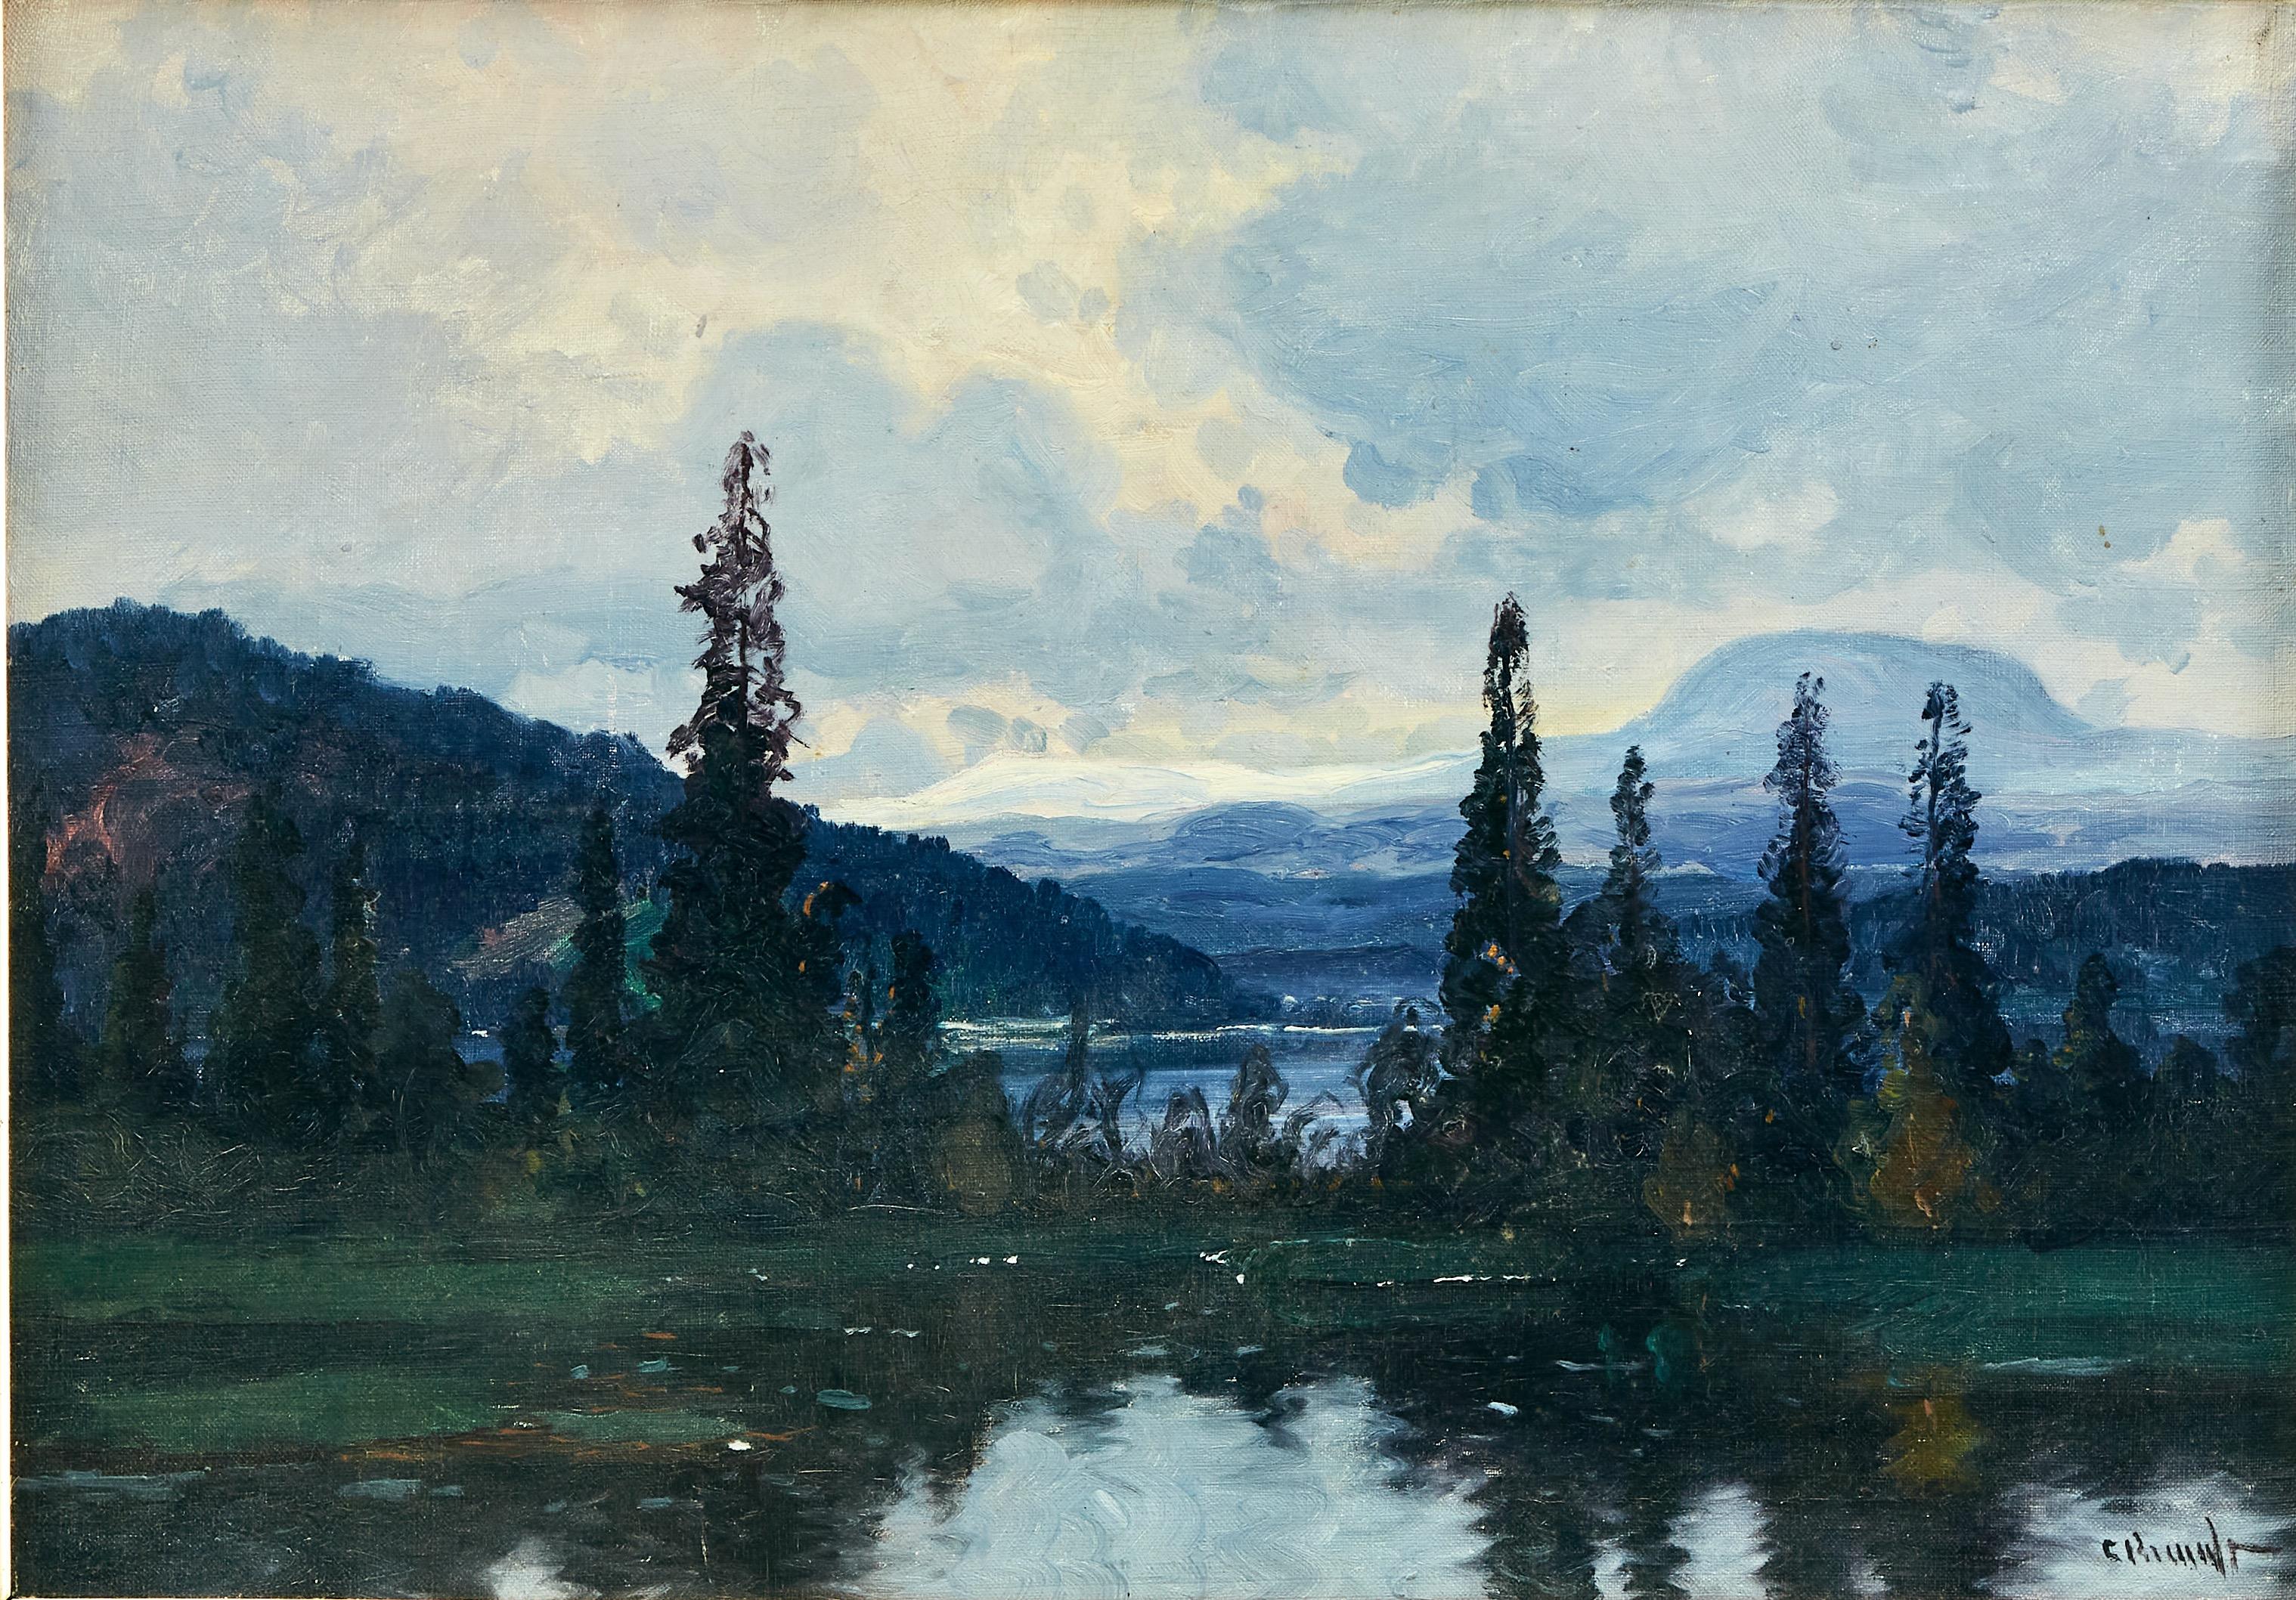  Nolbykullen et Ljungan, paysage de montagne suédois. Huile sur toile, circa 1900. - Painting de Carl Brandt